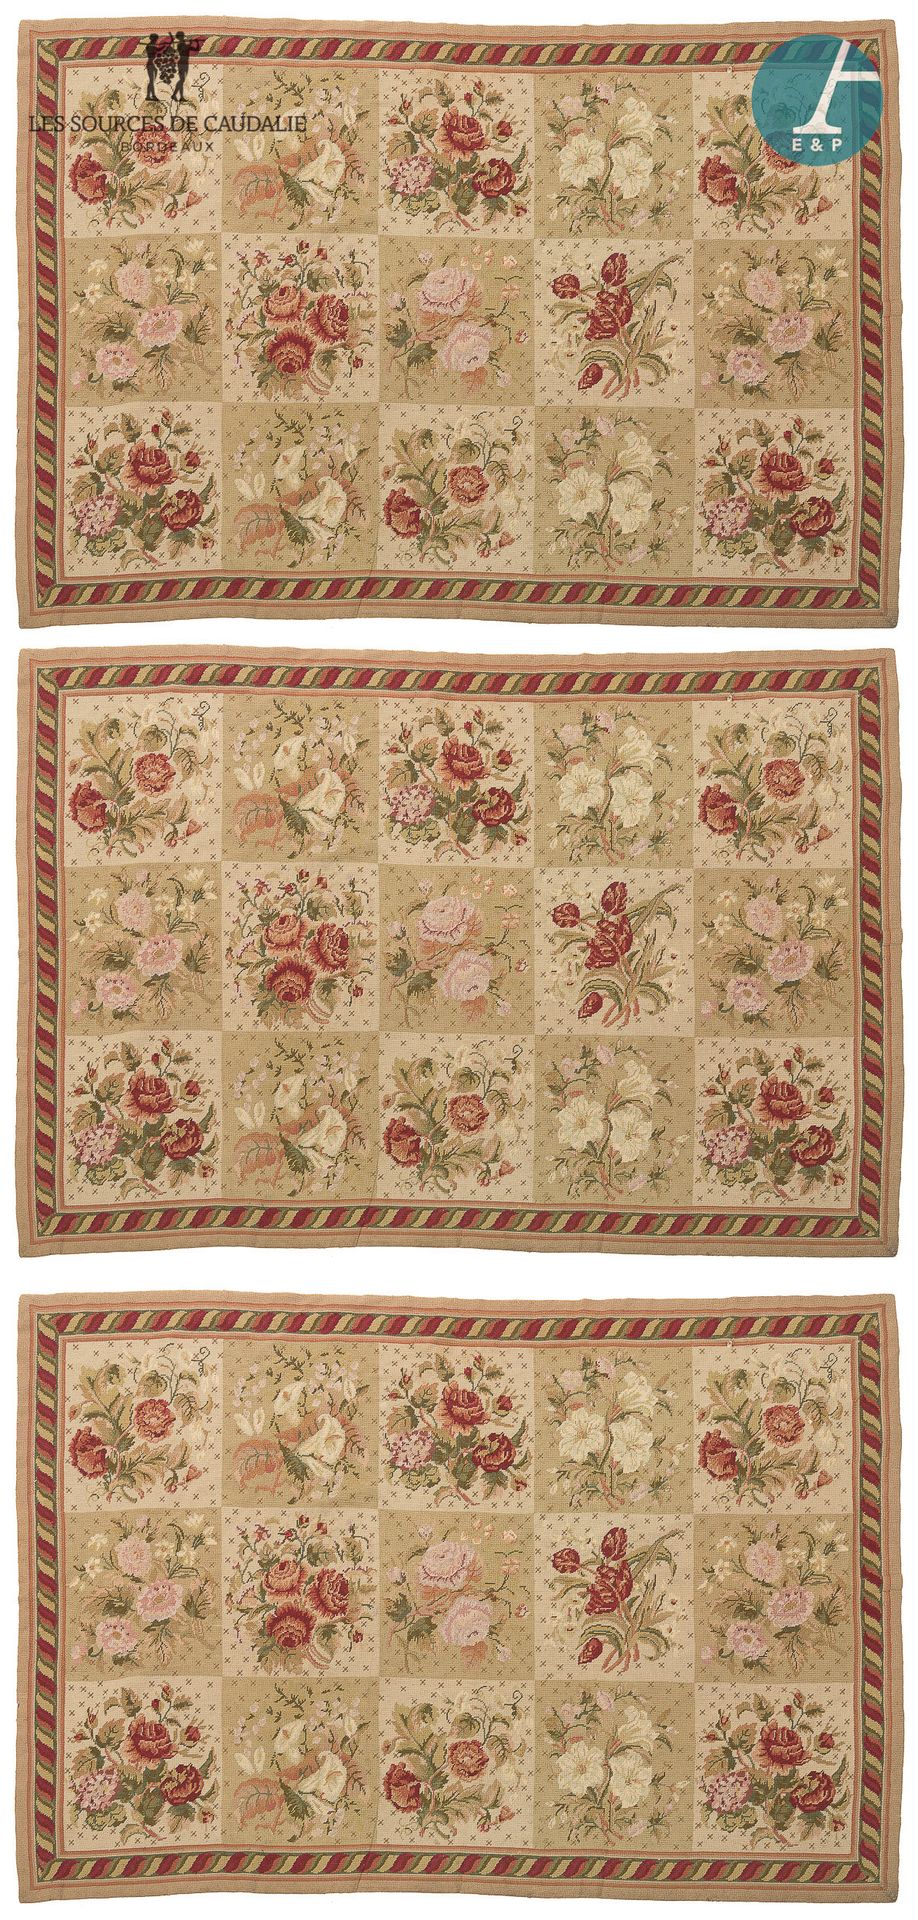 Null 来自酒吧的Le French Paradox des Sources de Caudalie

一套三张地毯，装饰有鲜花。

180x120cm (X&hellip;